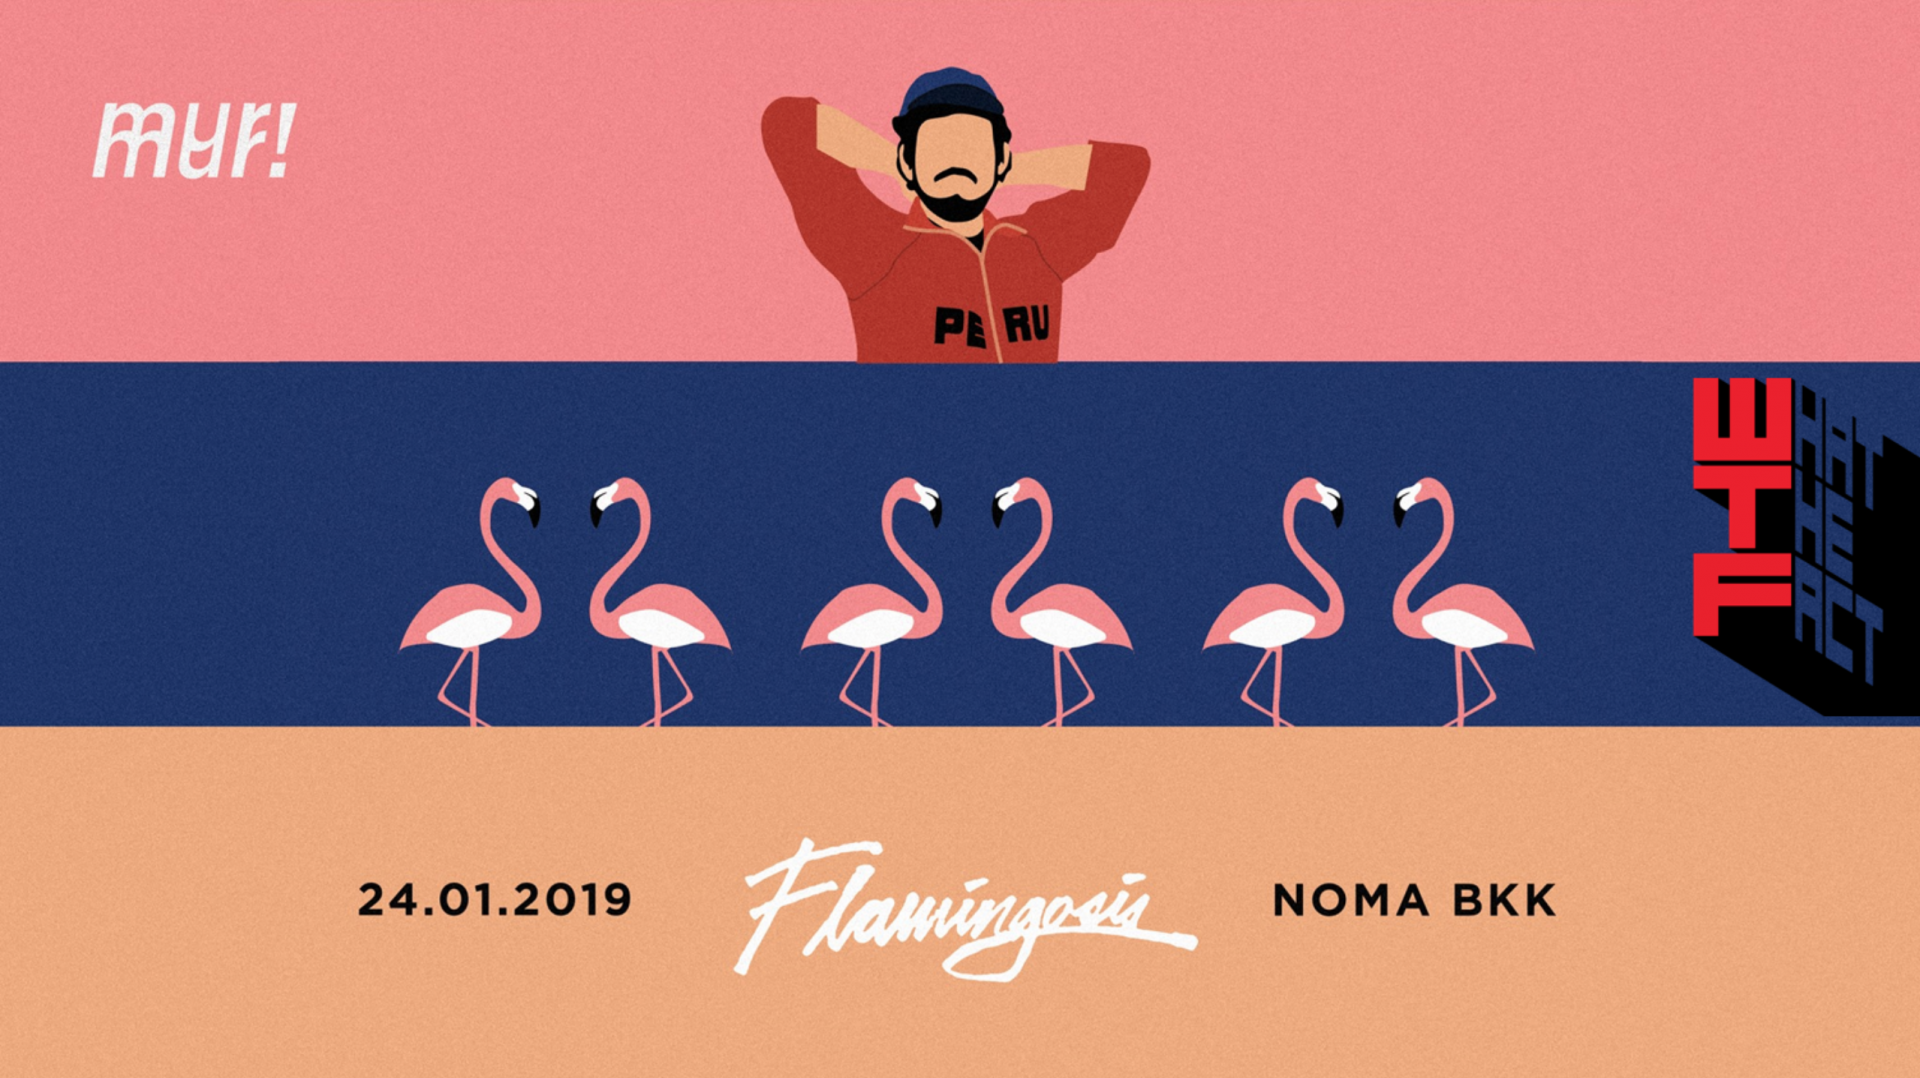 [ไปดูดีมั๊ย?] คอนเสิร์ตครั้งแรกในเมืองไทยของศิลปินผู้บุกเบิกแนวดนตรี Vaporwave “Flamingosis”